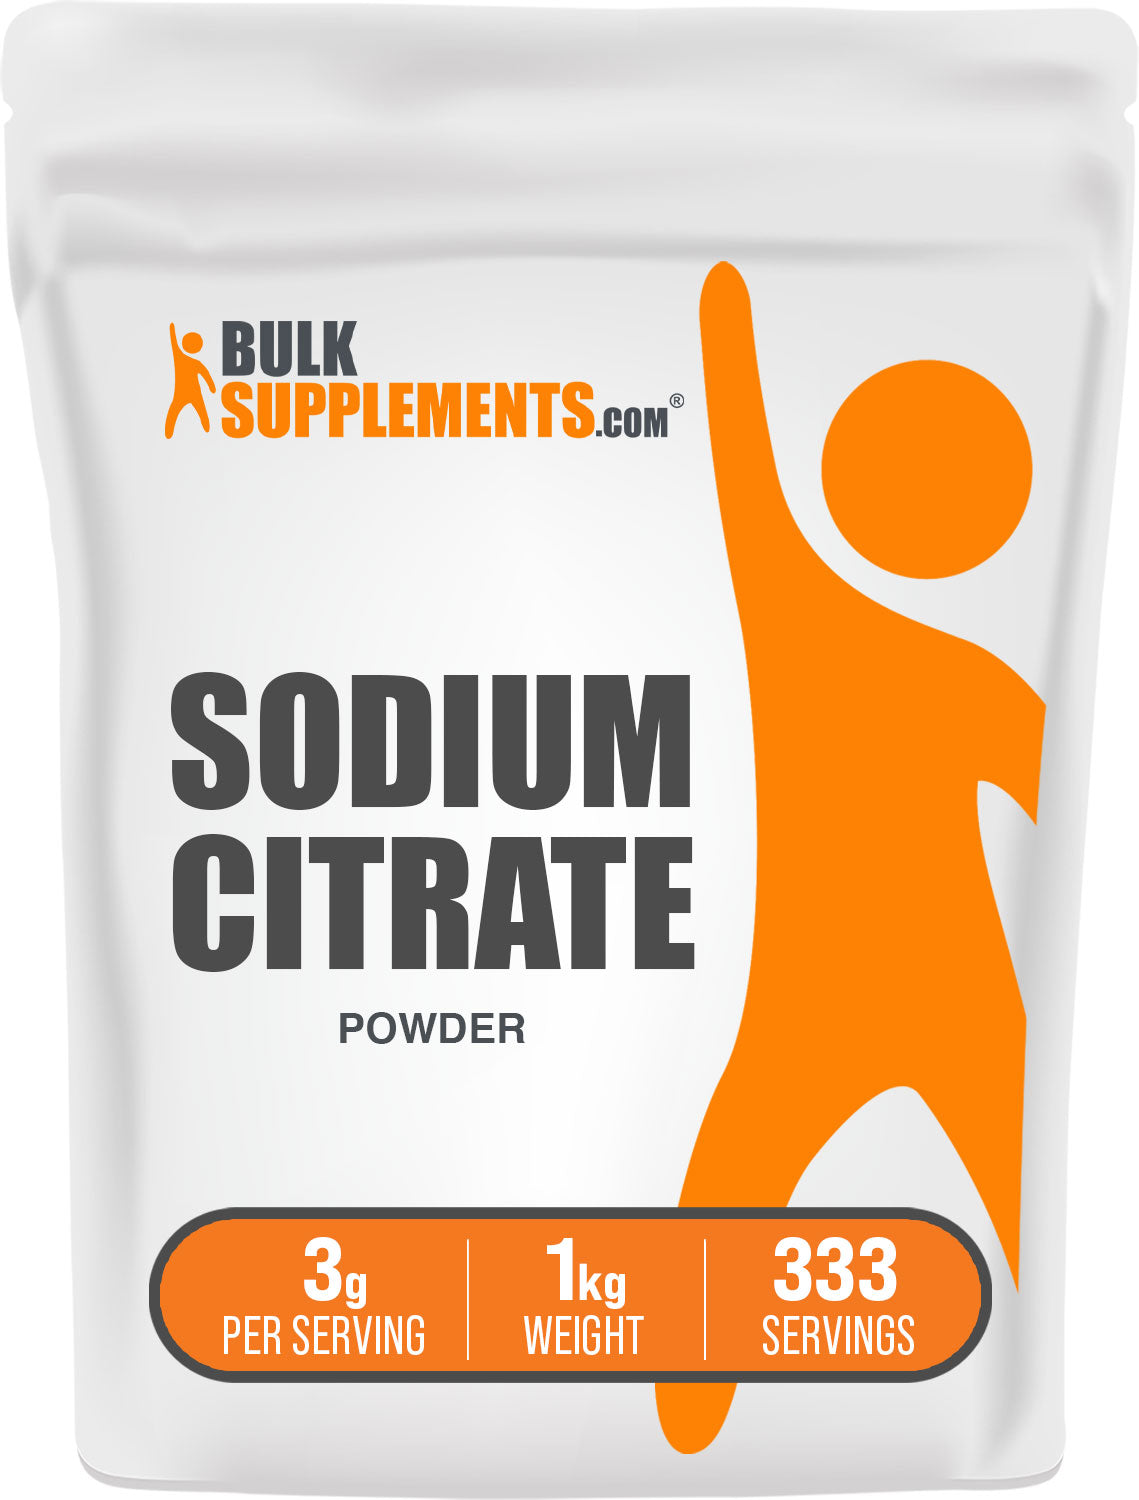 BulkSupplements.com Sodium Citrate Powder 1kg bag